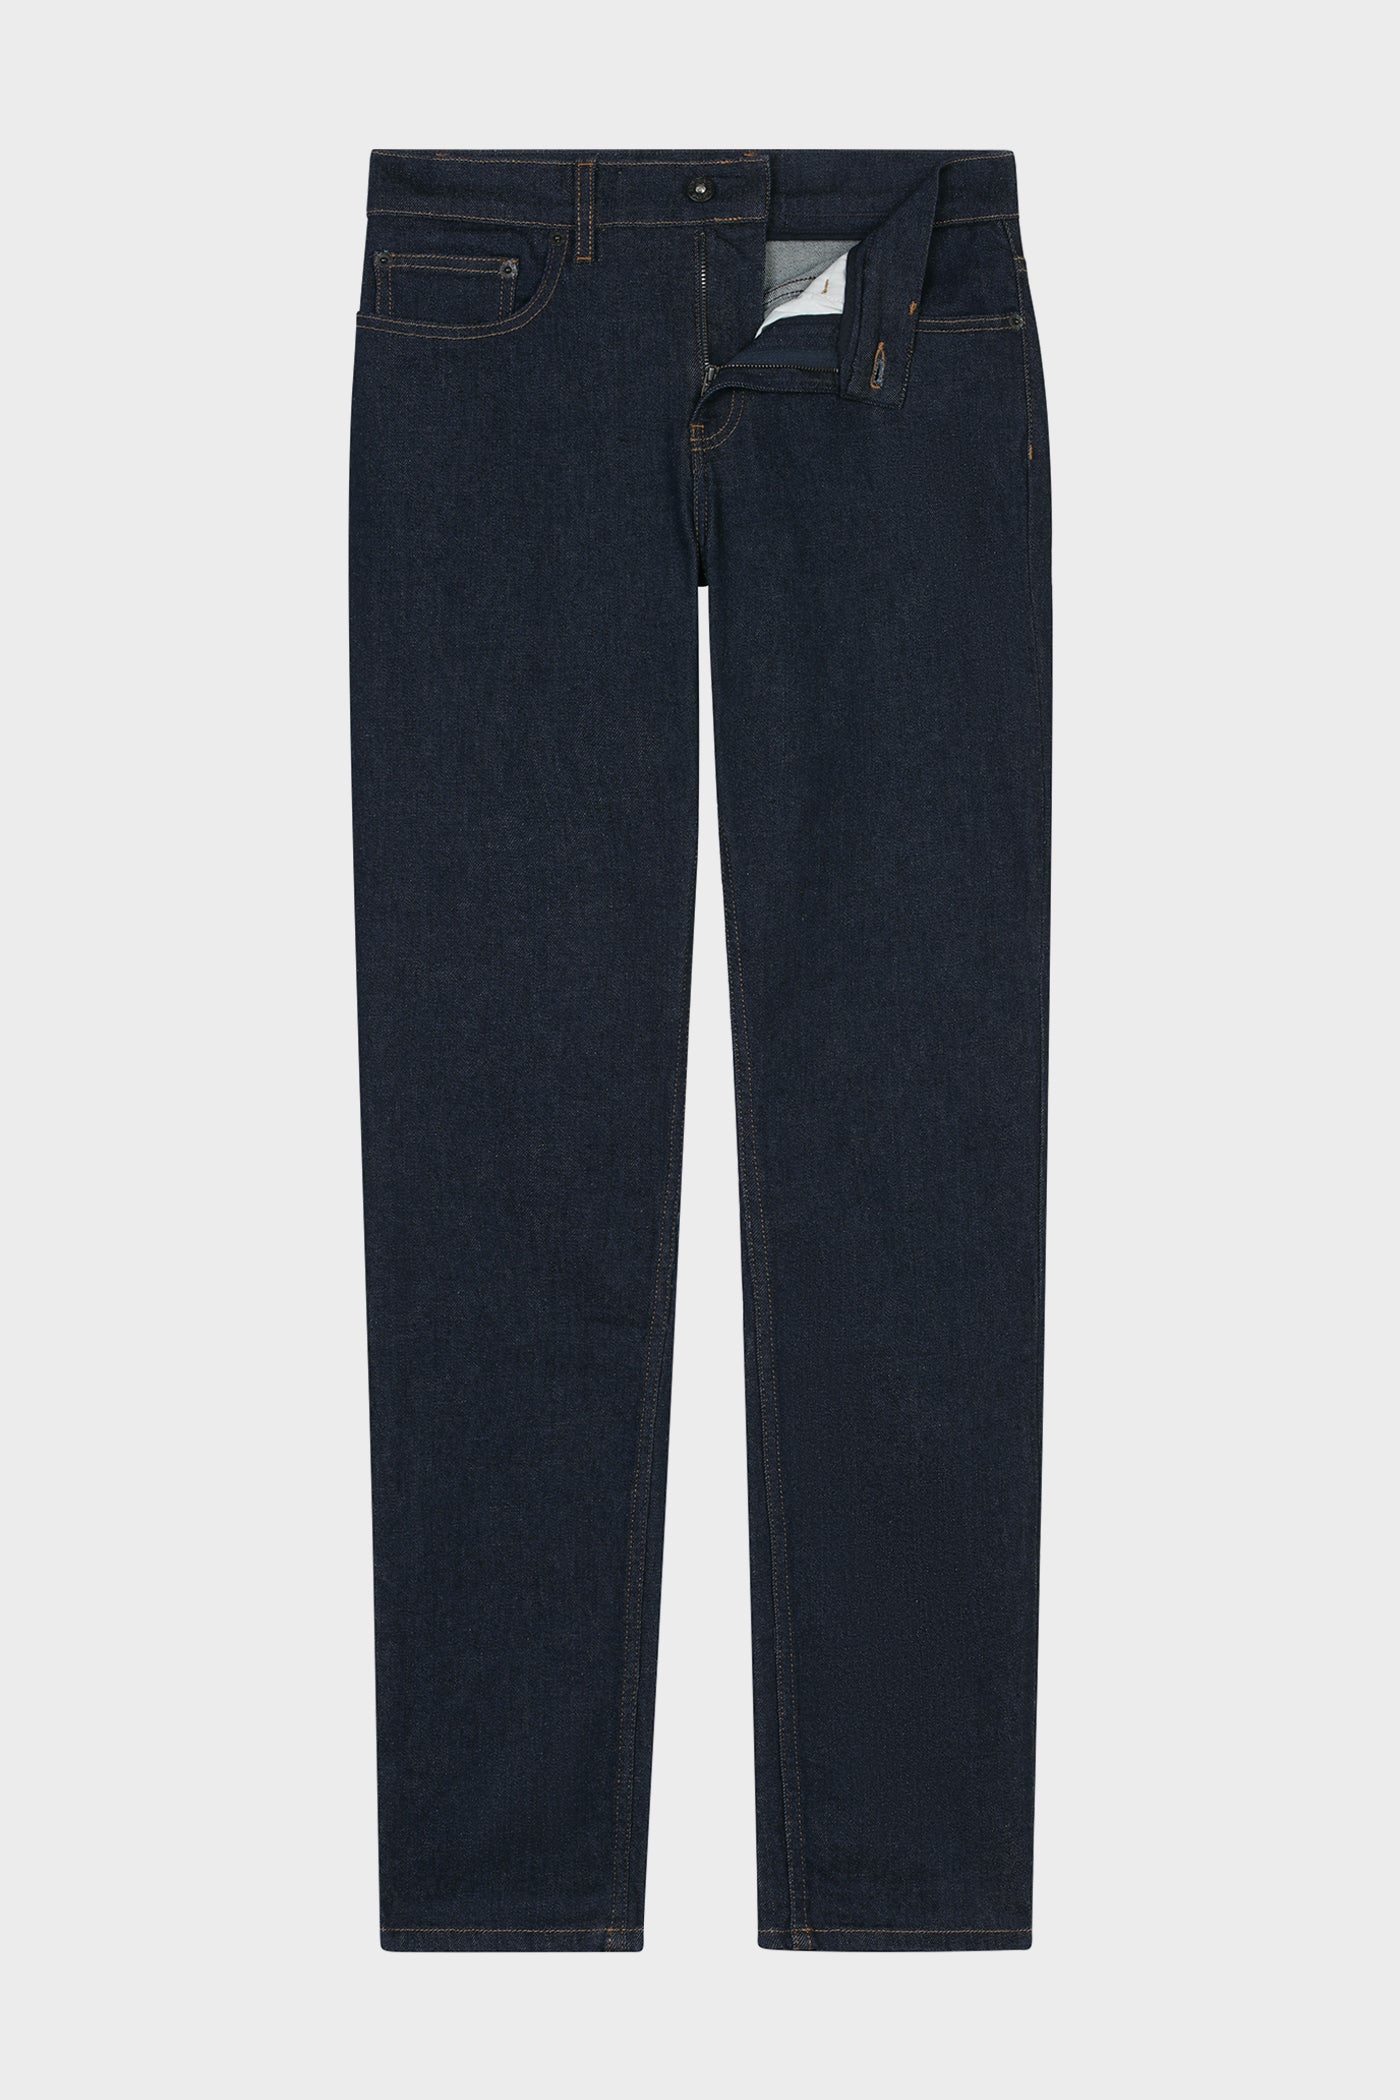 Pantalon Jeans Dorian Brut